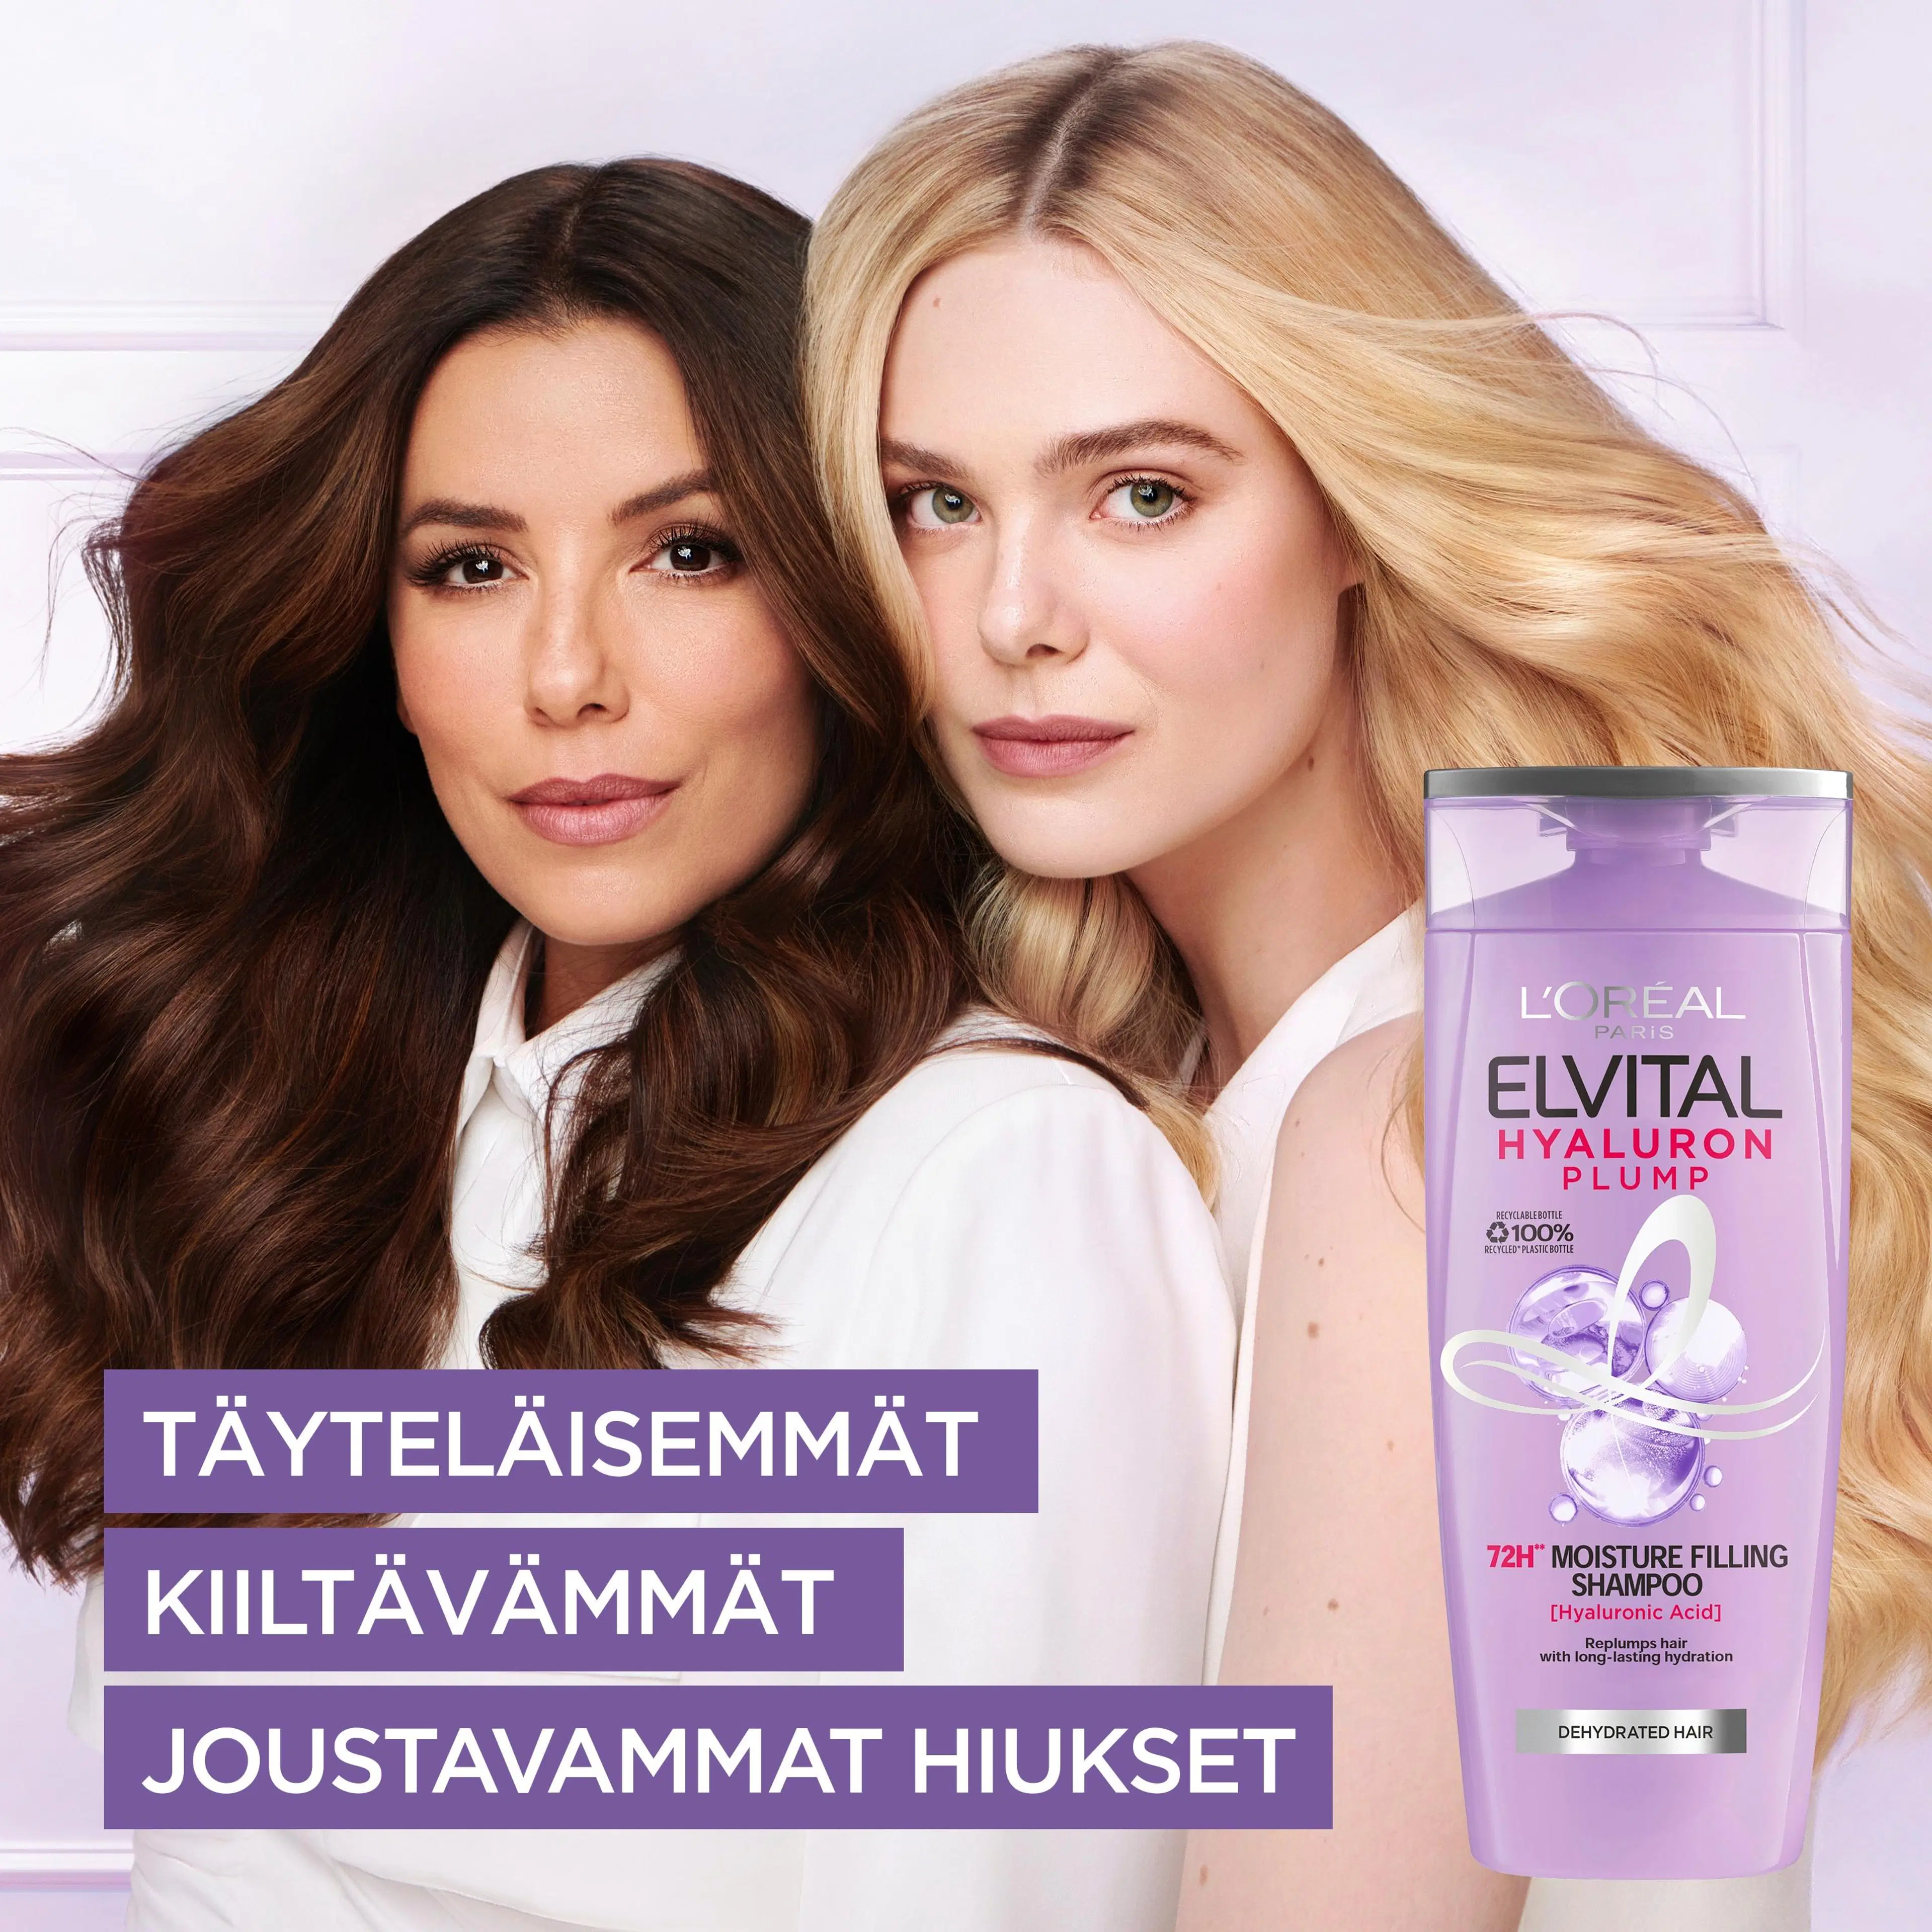 L'Oréal Paris Elvital Hyaluron Plump shampoo kosteutta kaipaaville hiuksille 250ml